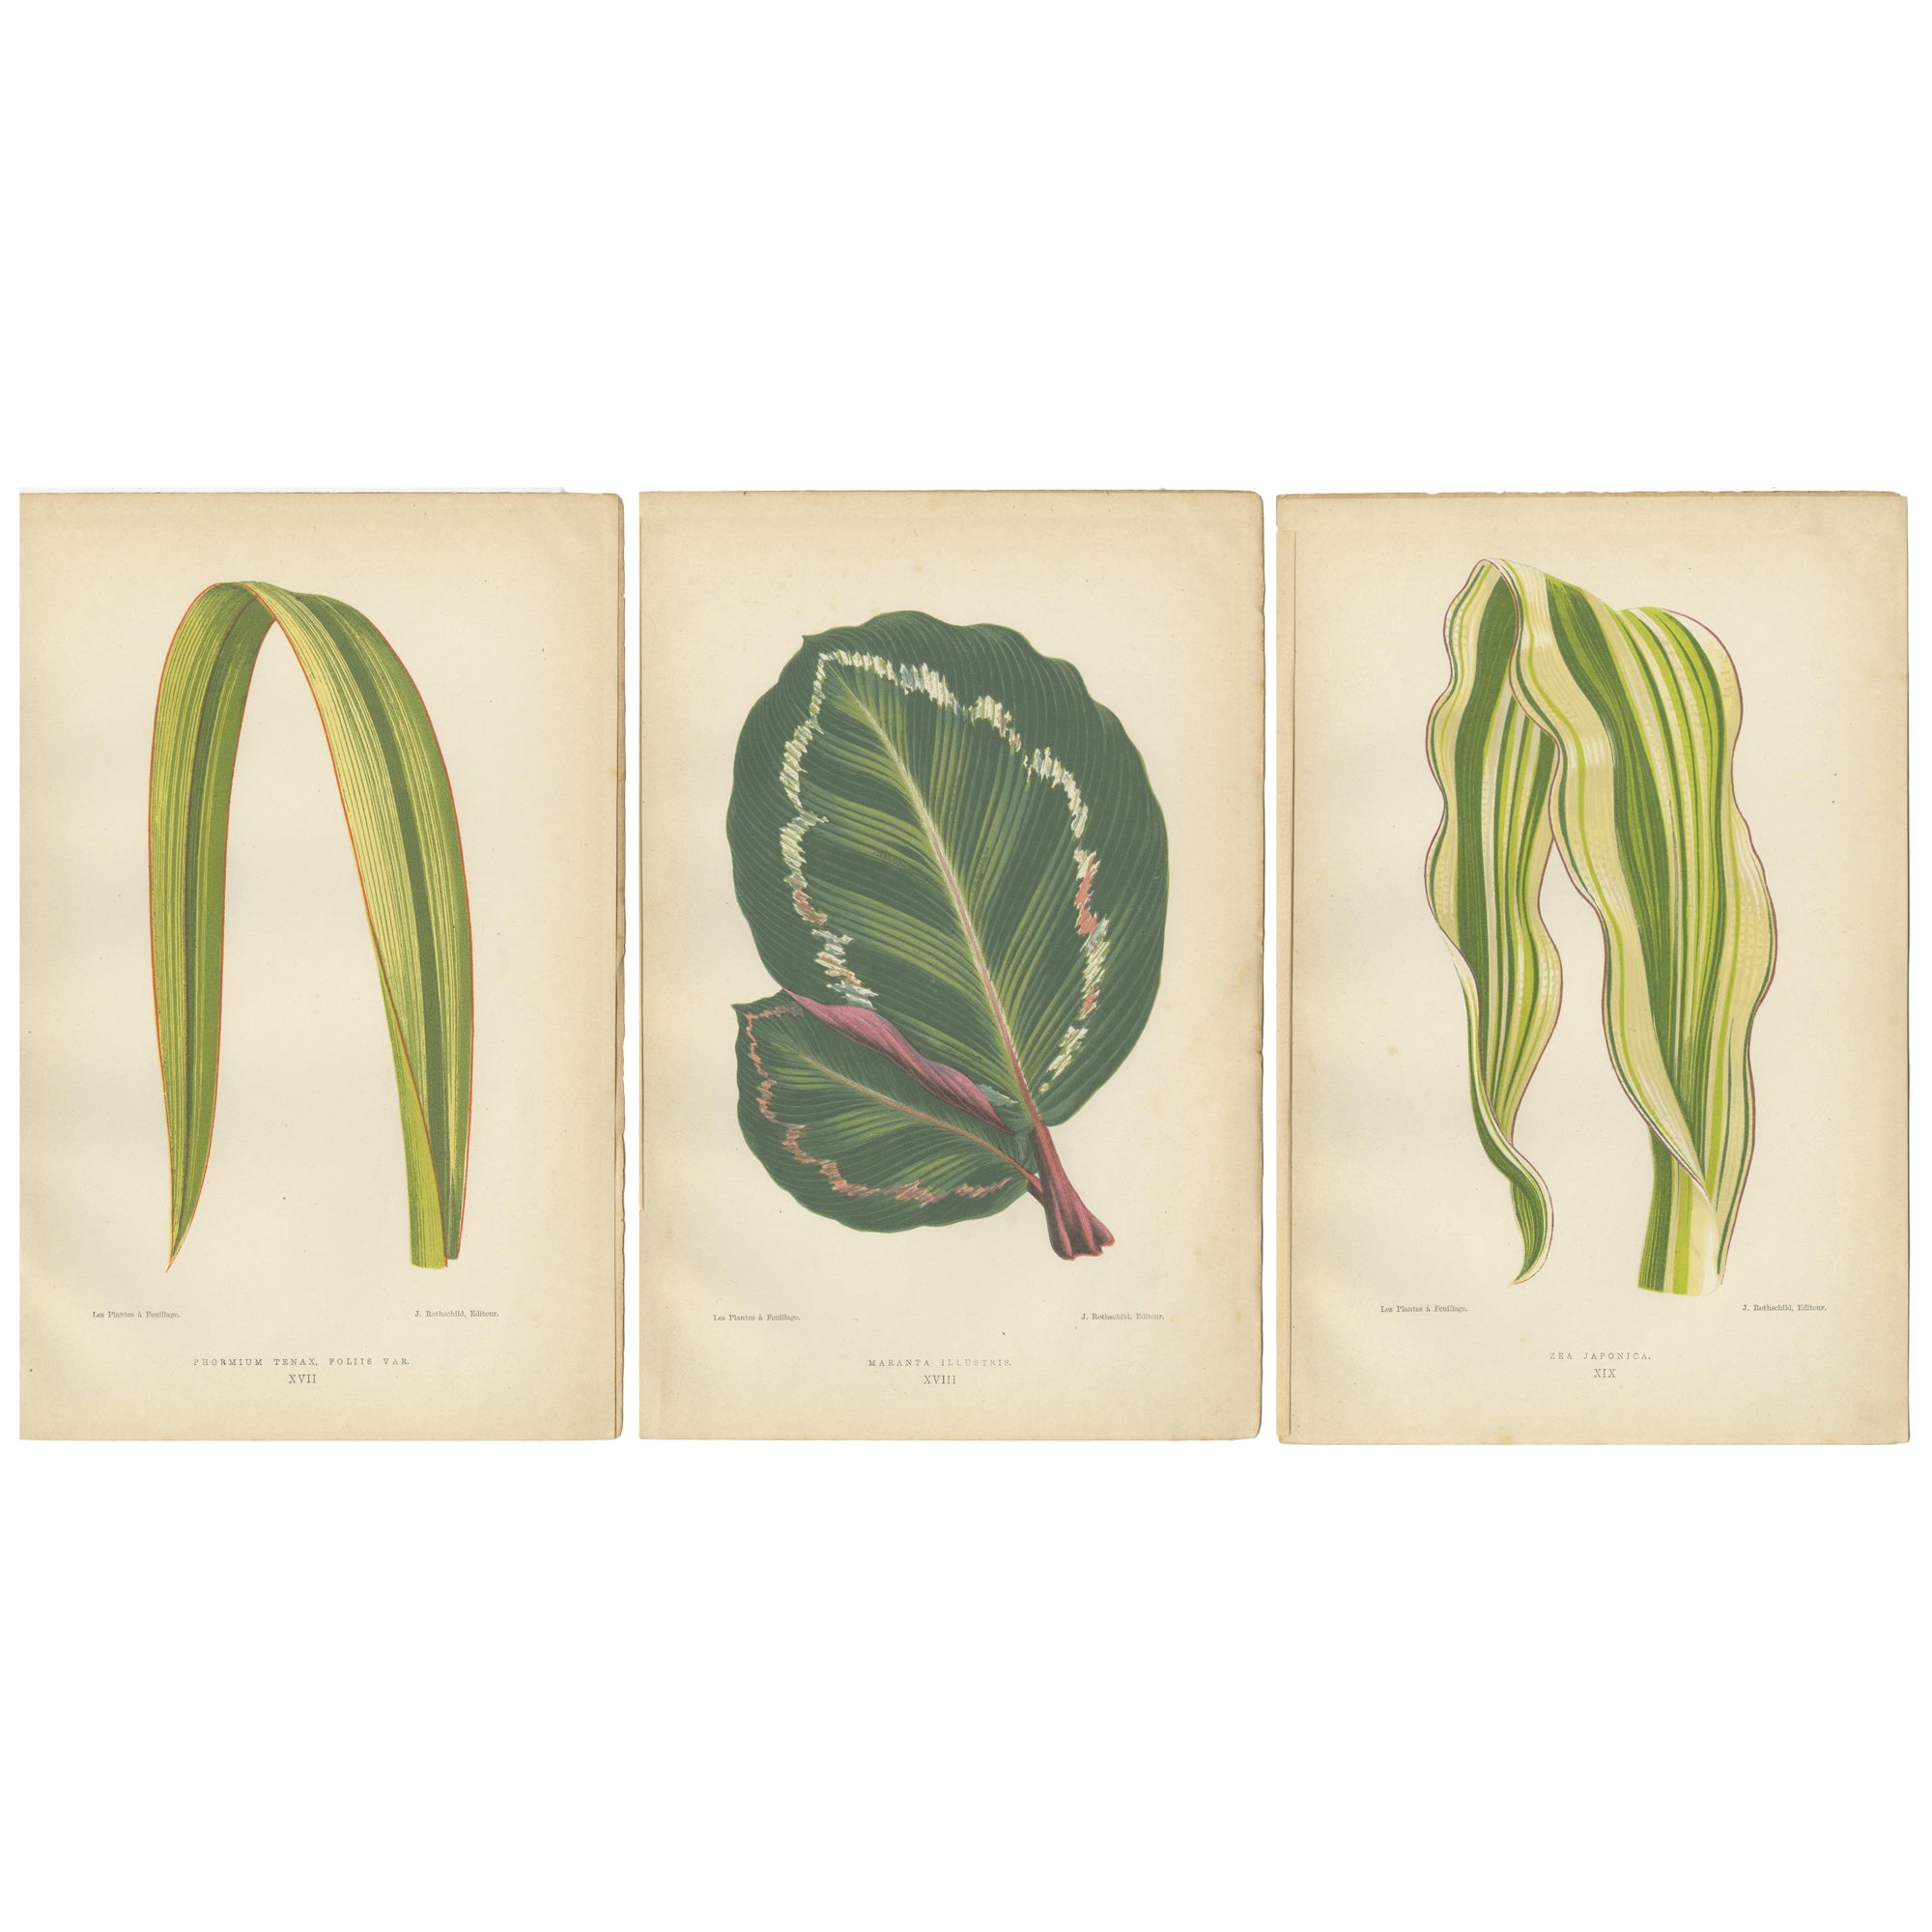 Variegated Elegance: Eine Kollektion botanischer Drucke des 19. Jahrhunderts